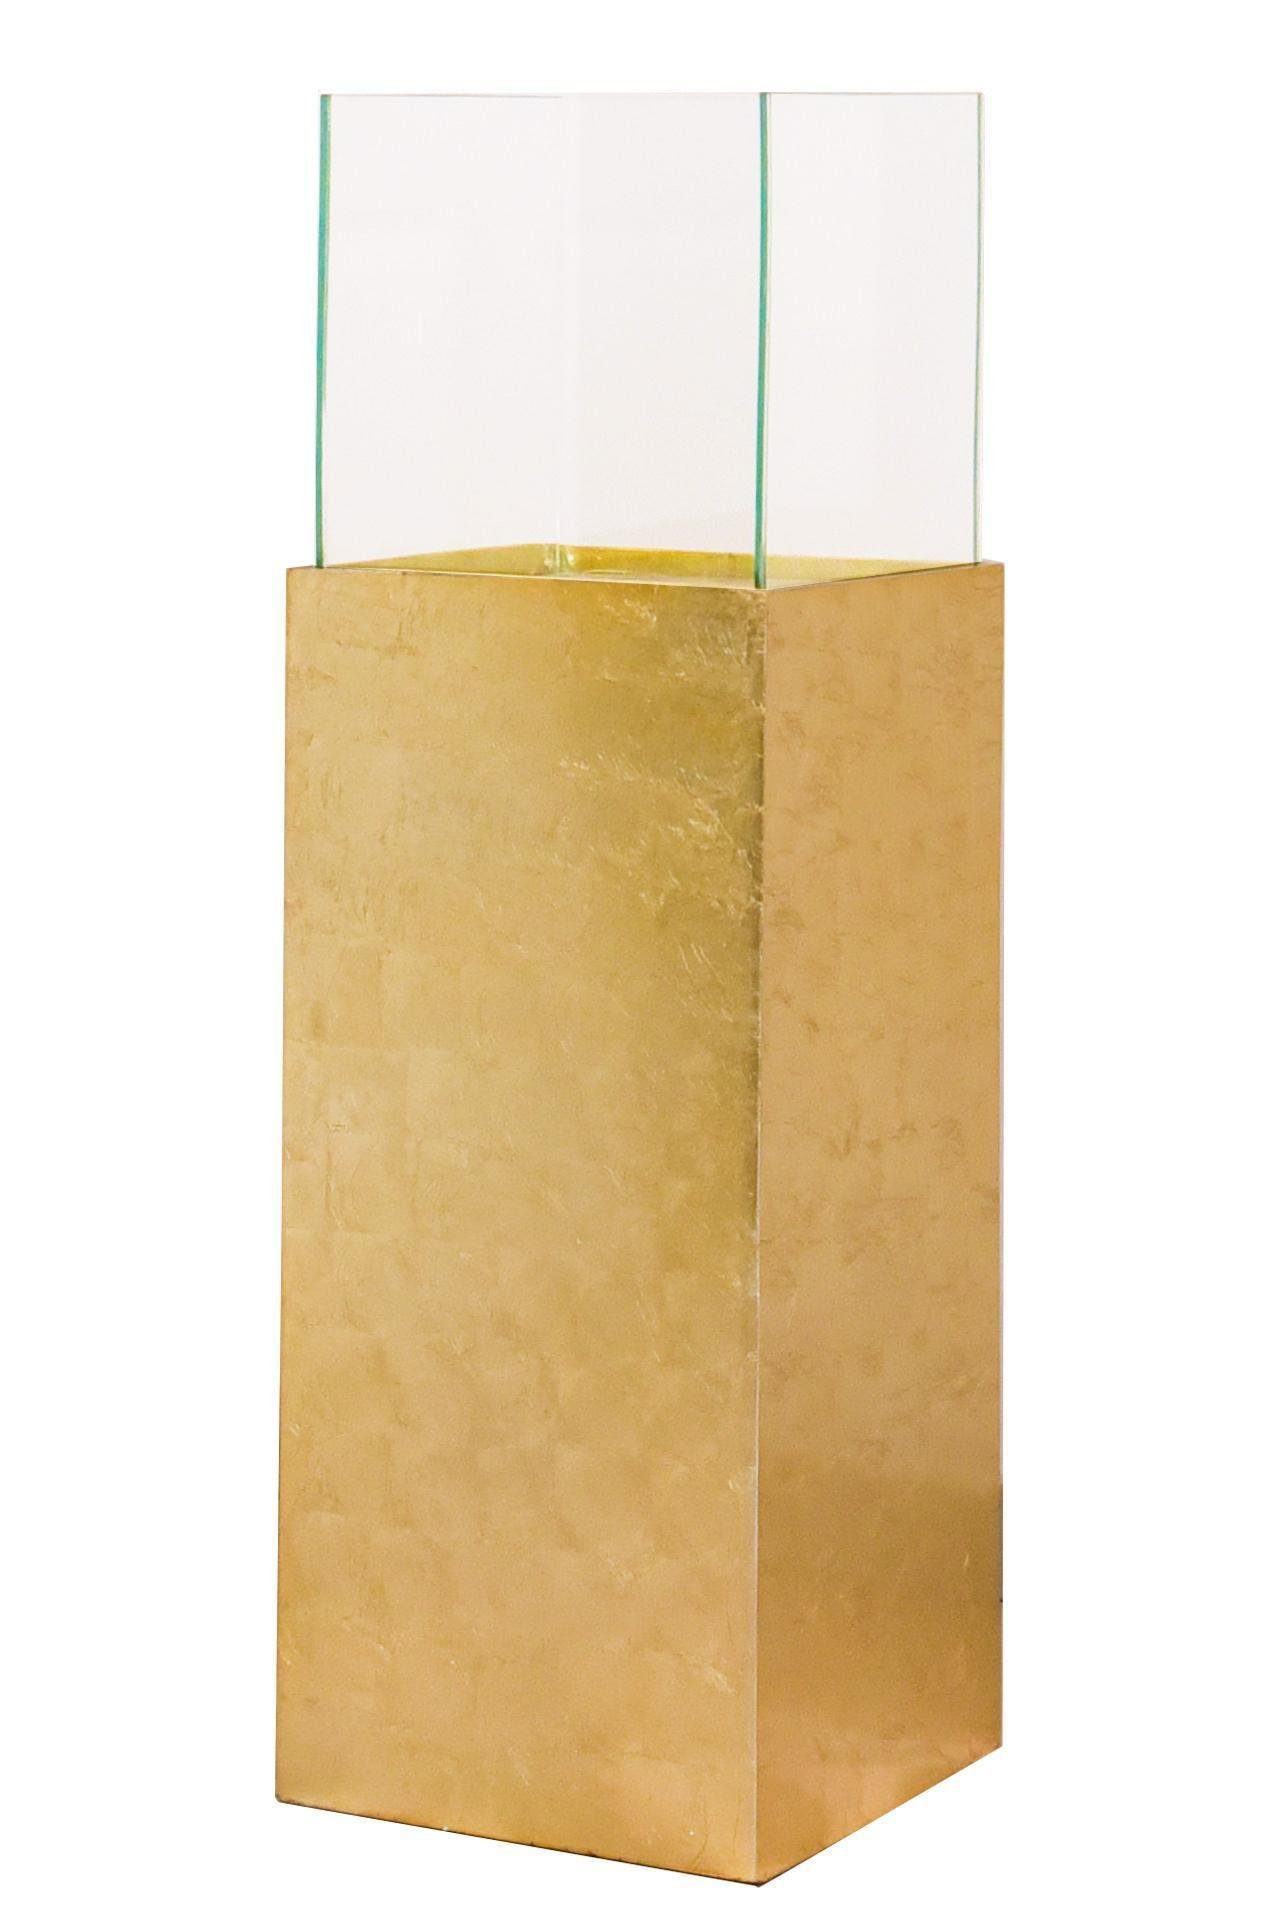 VIVANNO Bodenwindlicht Windlichtsäule Kerzenhalter Windlicht Fiberglas "Candela", Gold | Windlichter